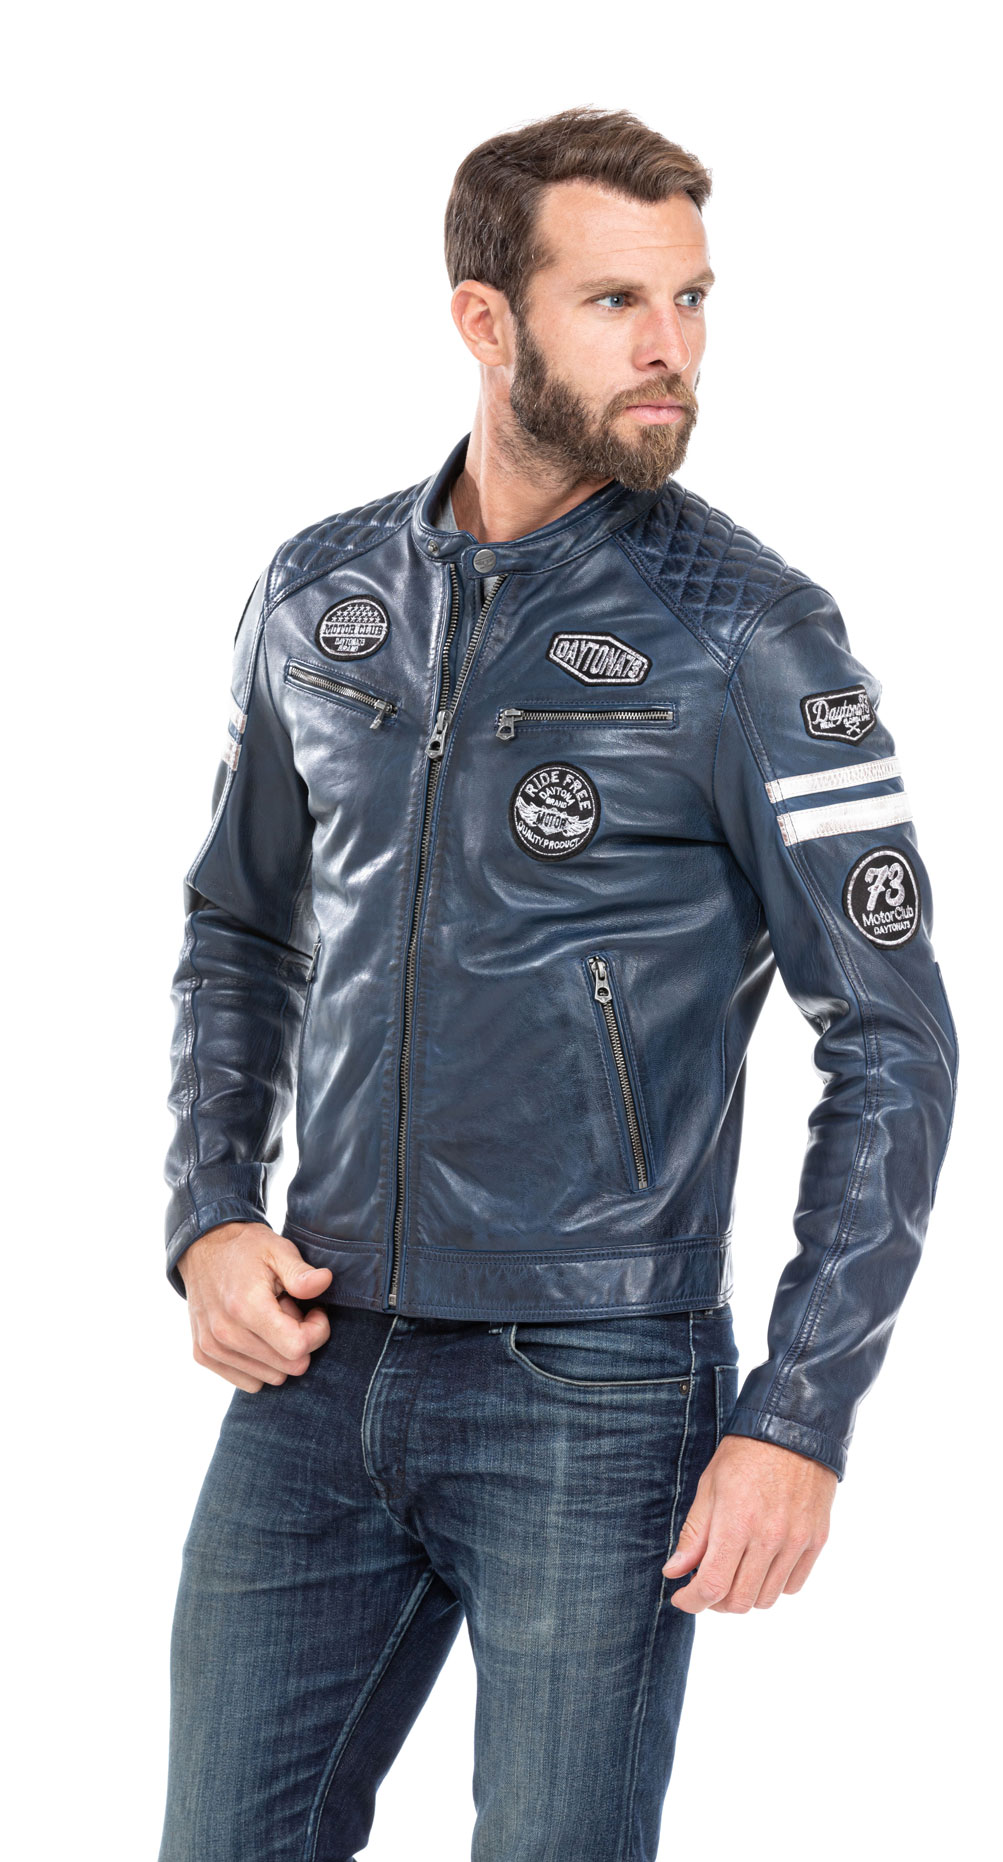 Hommes Véritable Peau D'Agneau Cuir Veste Bleu Slim Fit Motard Moto 